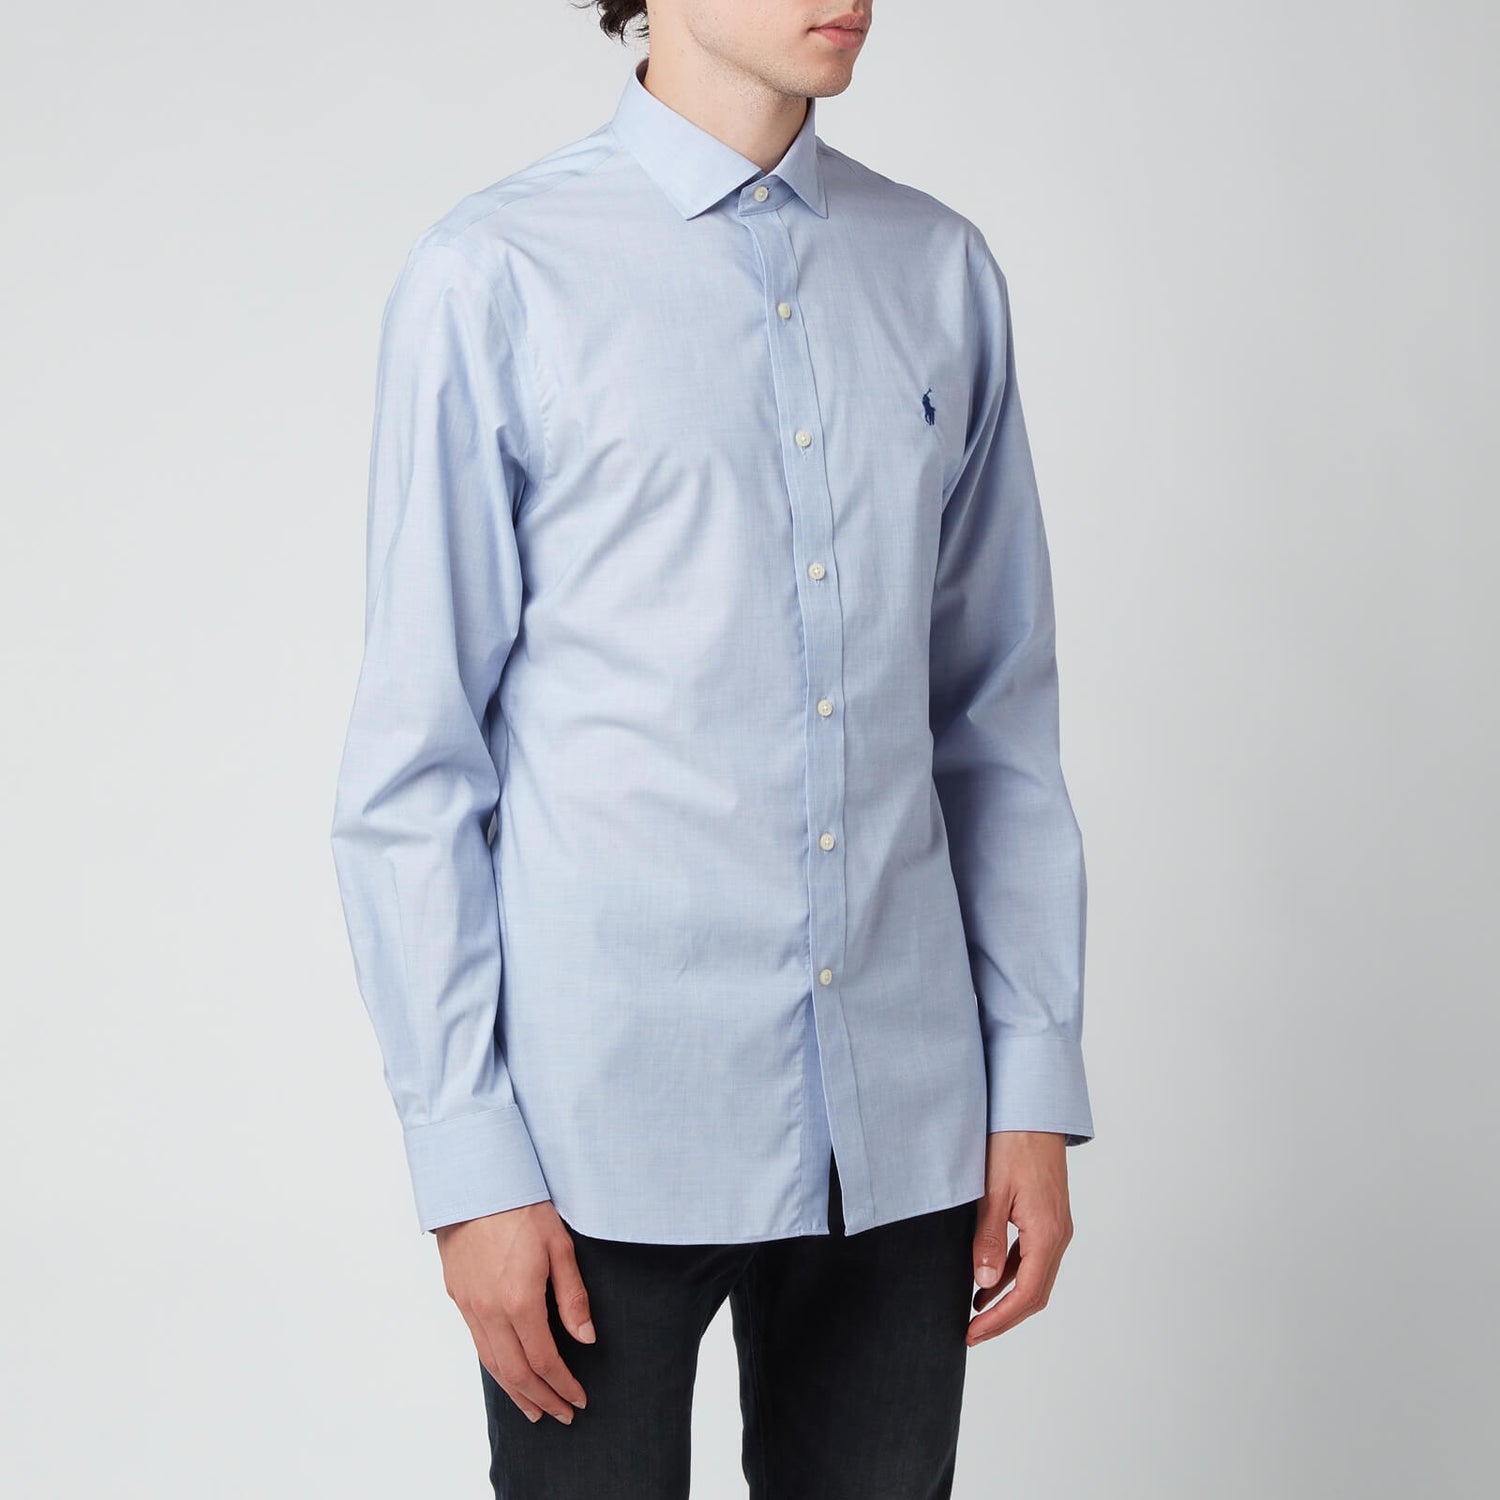 Polo Ralph Lauren Men's Slim Fit Poplin Shirt - Light Blue/White